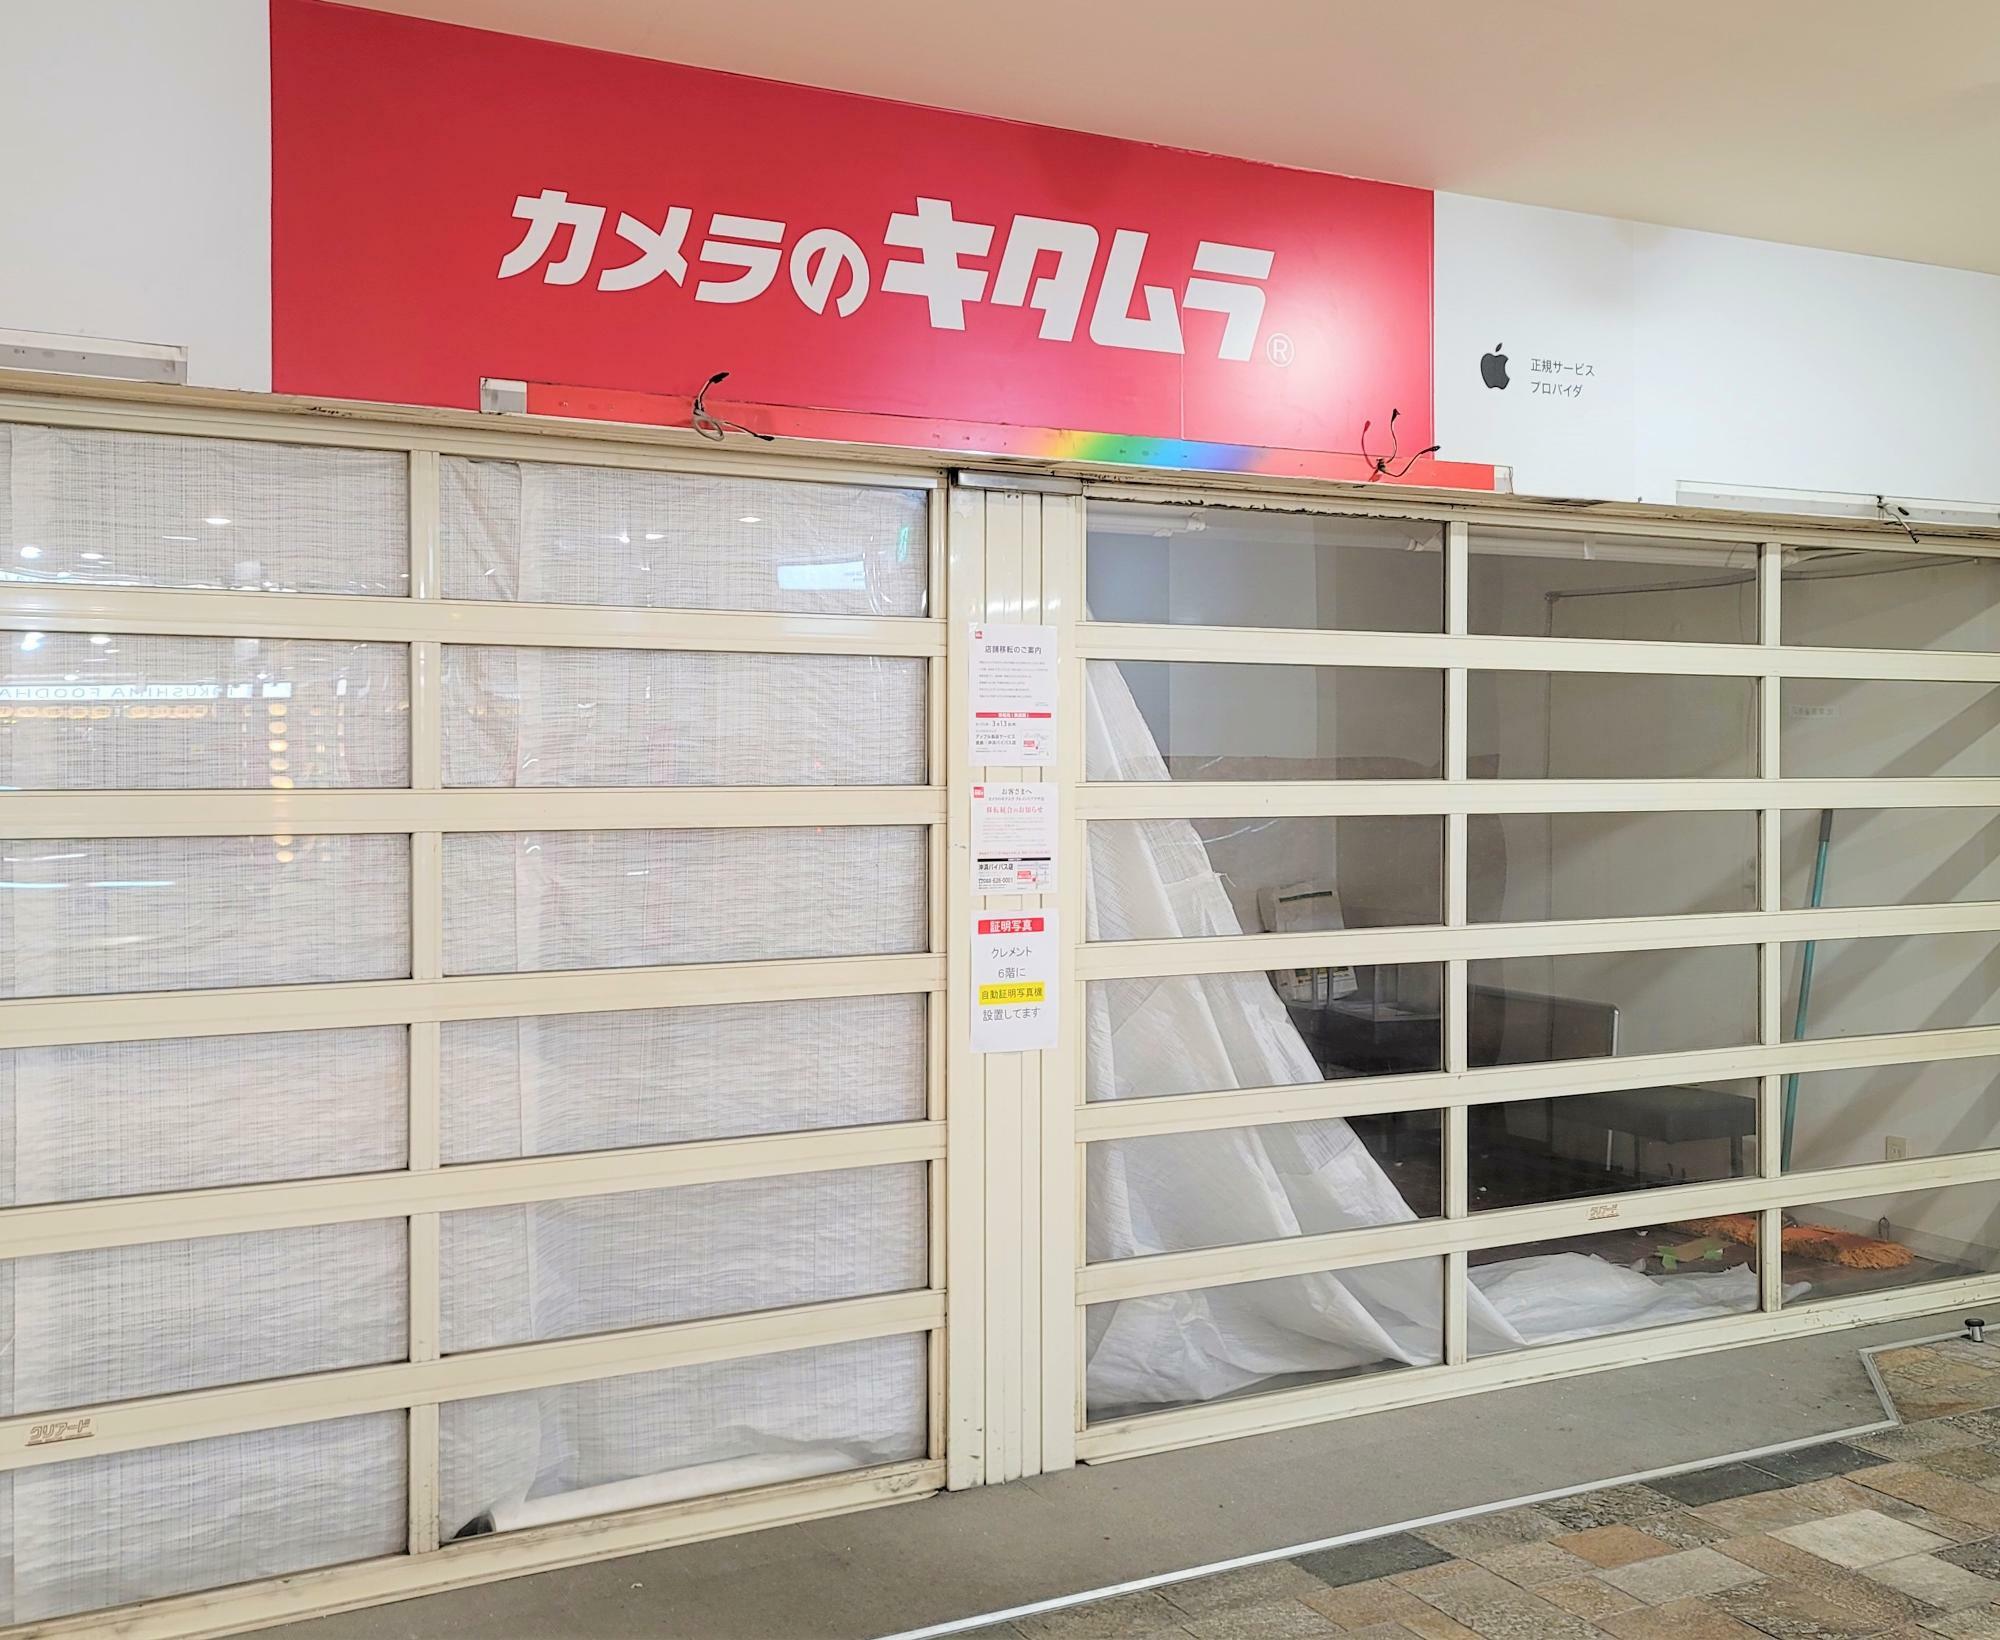 徳島駅クレメントプラザ地下1Fに長くあった「カメラのキタムラ クレメントプラザ店」。